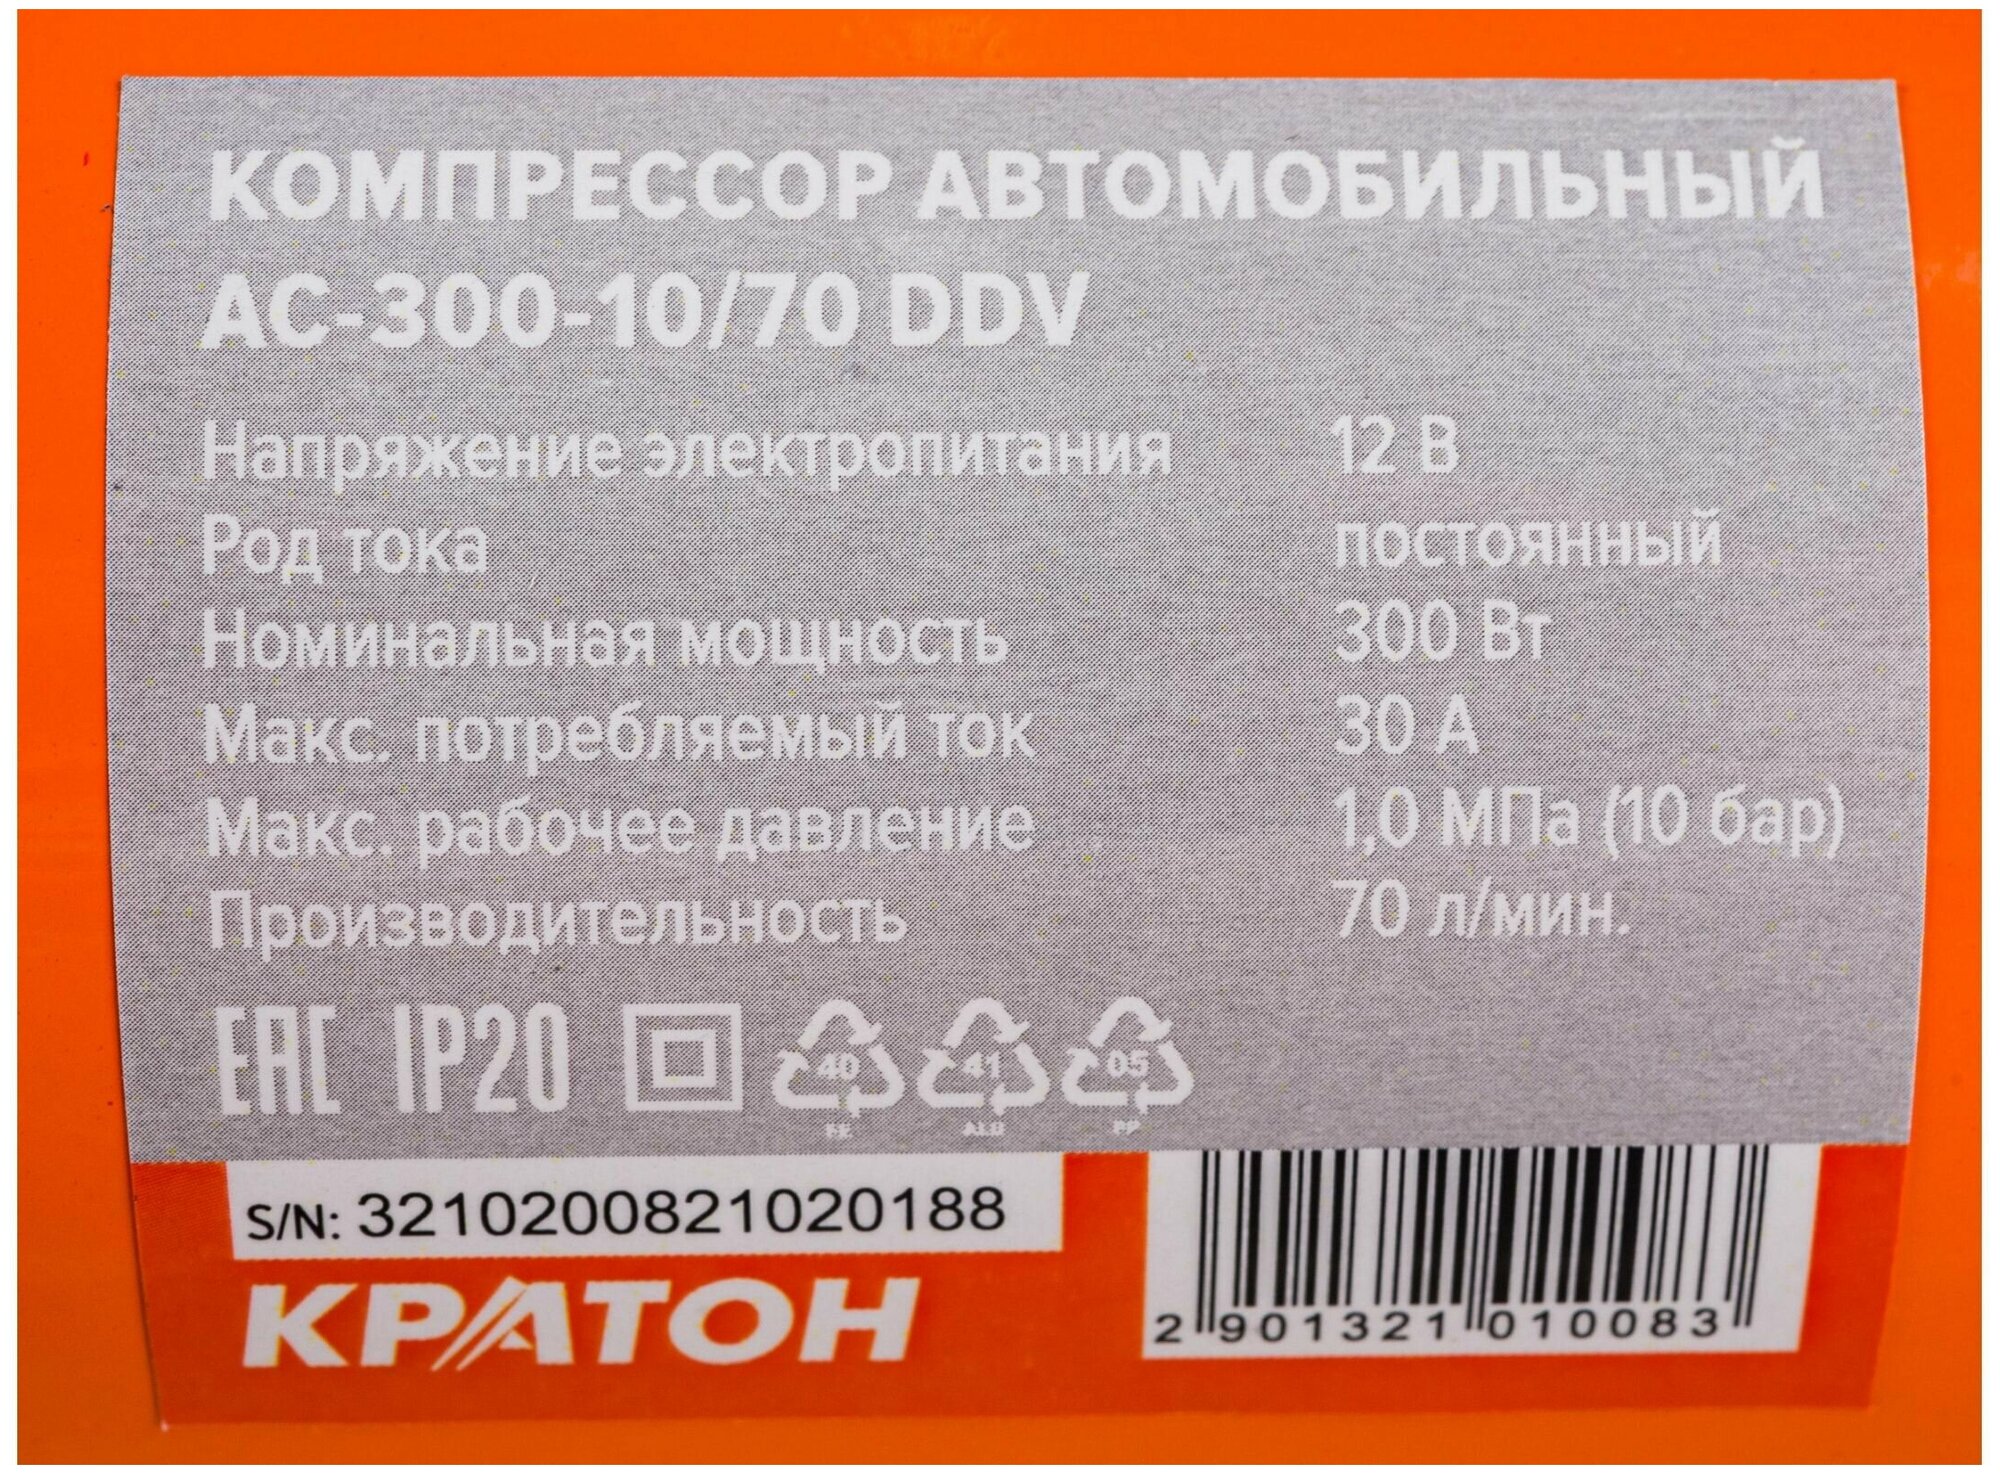 Автомобильный компрессор Кратон AC30010/70DDV 70 л/мин 99 атм